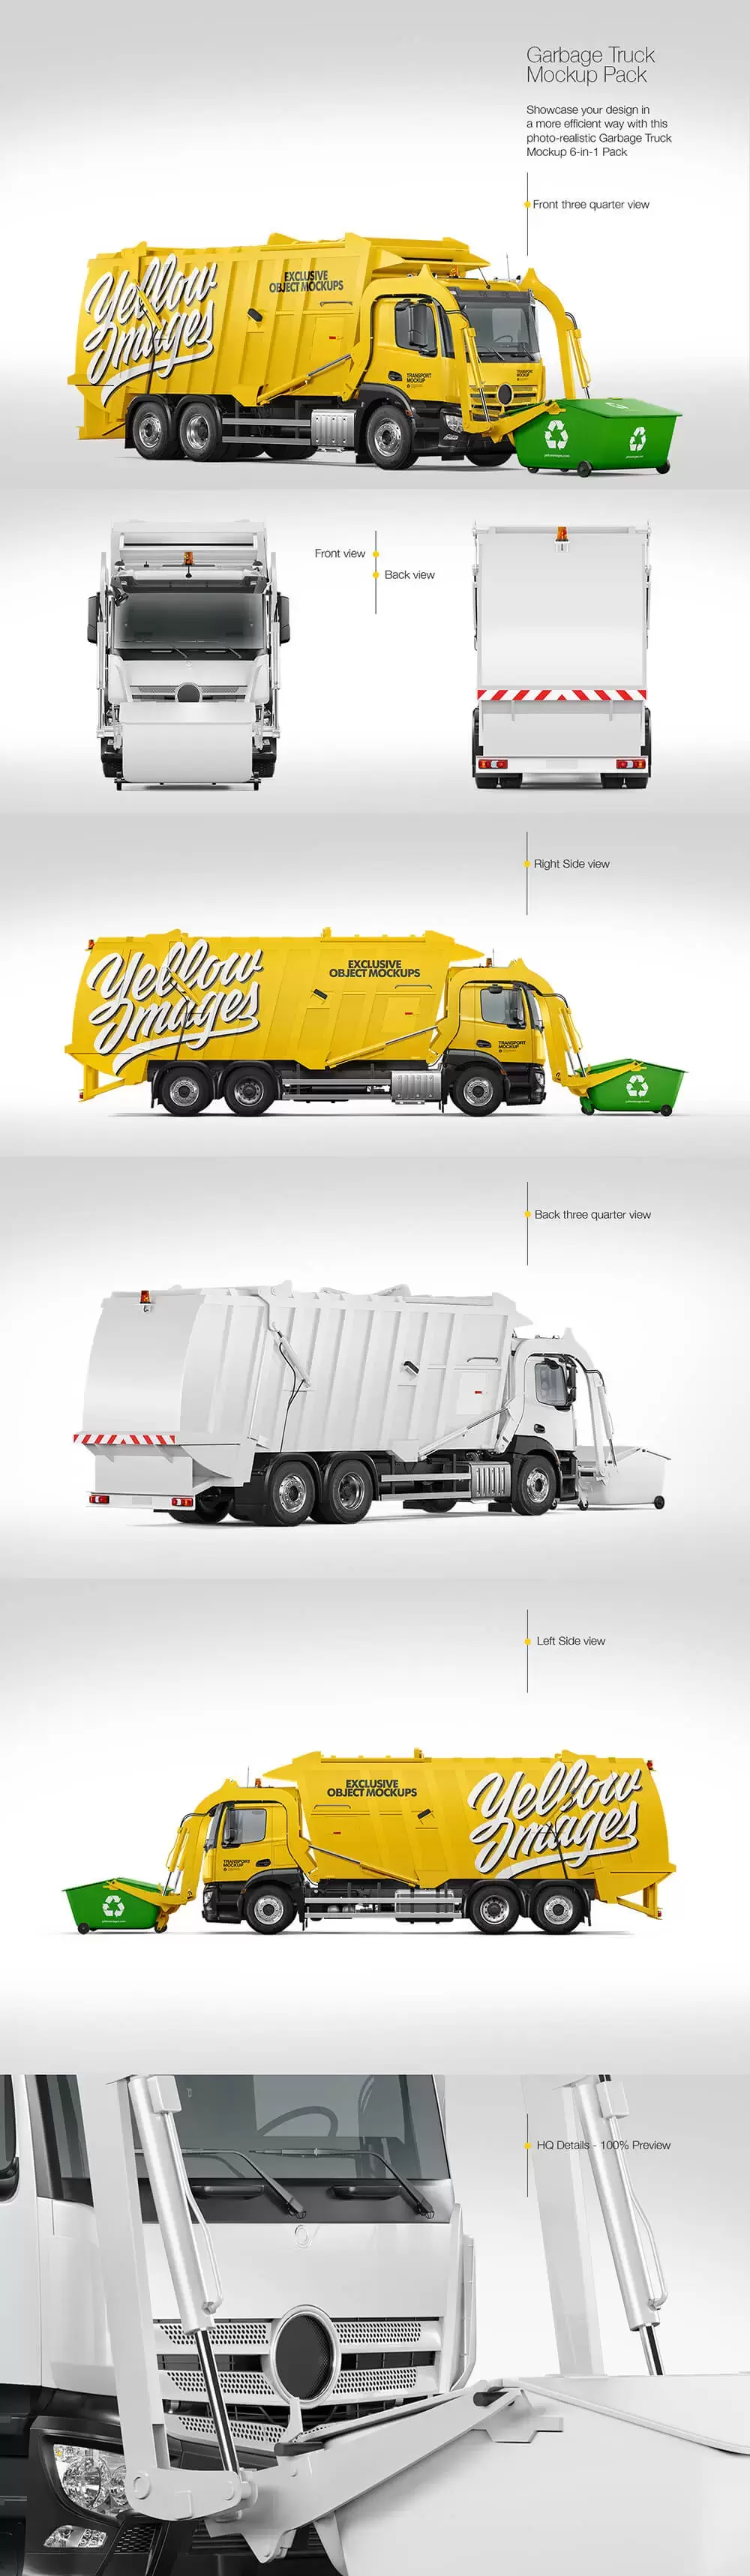 环卫垃圾车外观广告设计样机 (TIF)免费下载